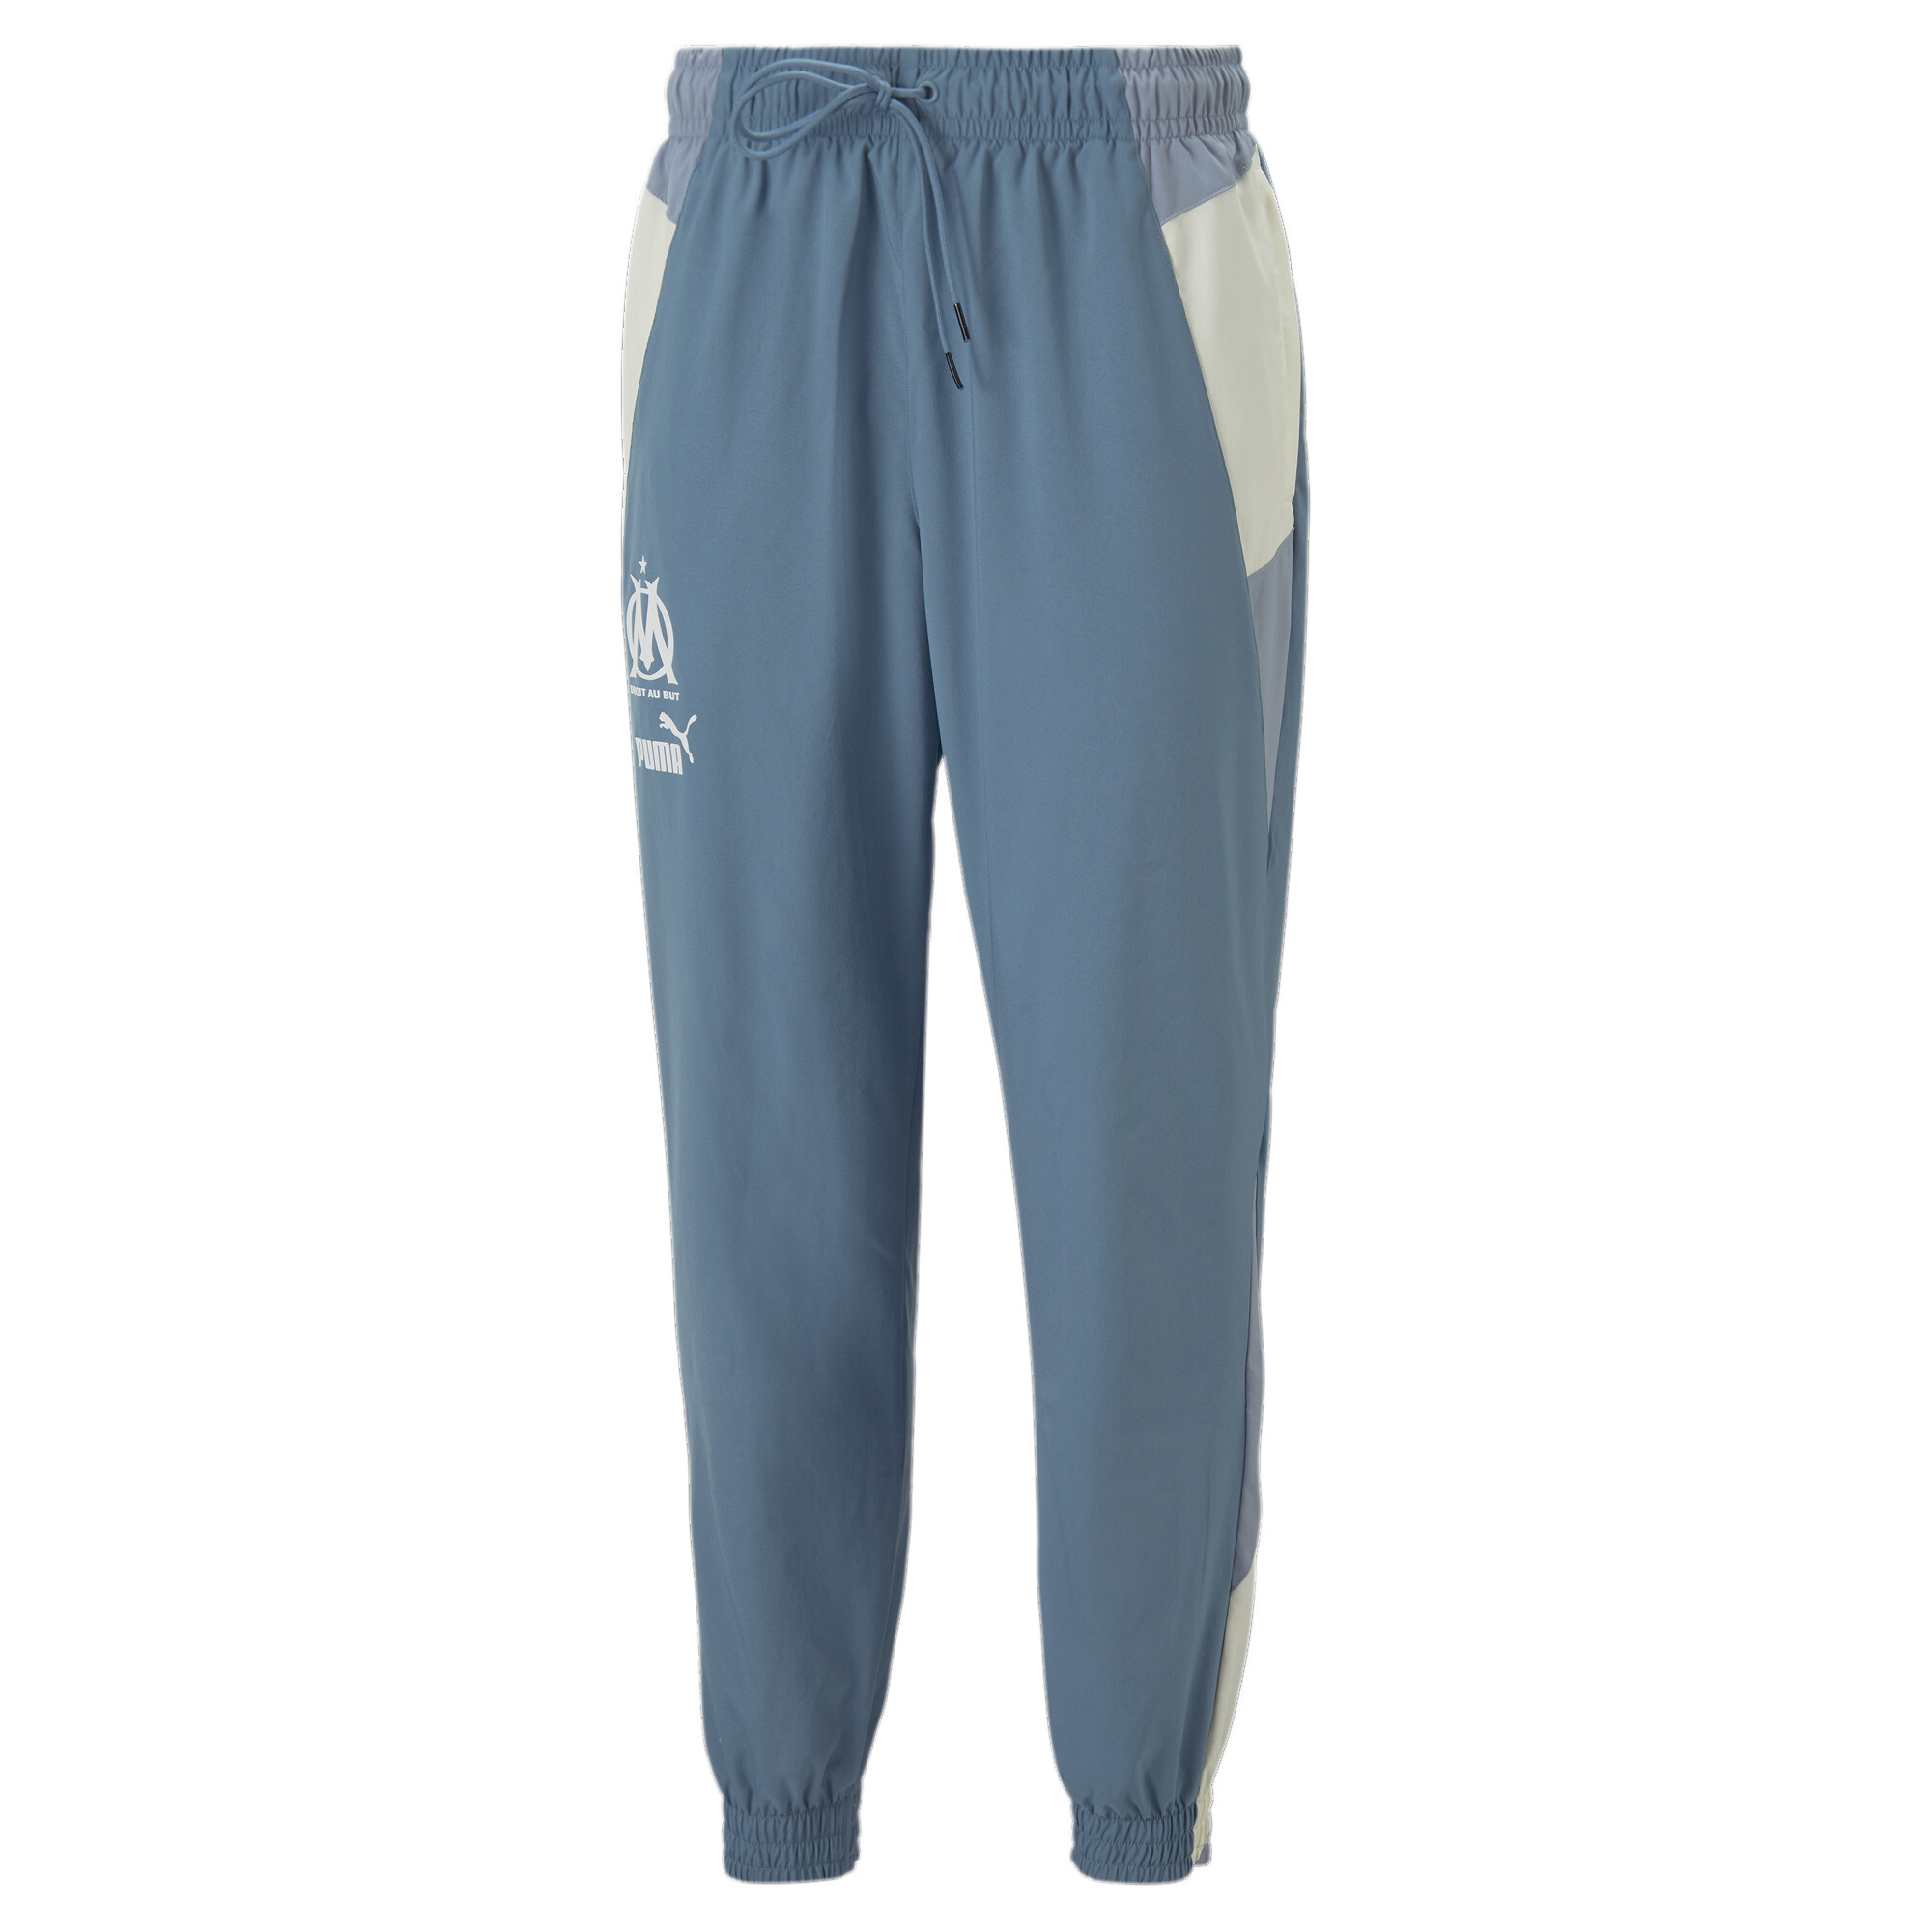 Men's Puma Olympique De Marseille Woven Pants, Blue, Size S, Clothing